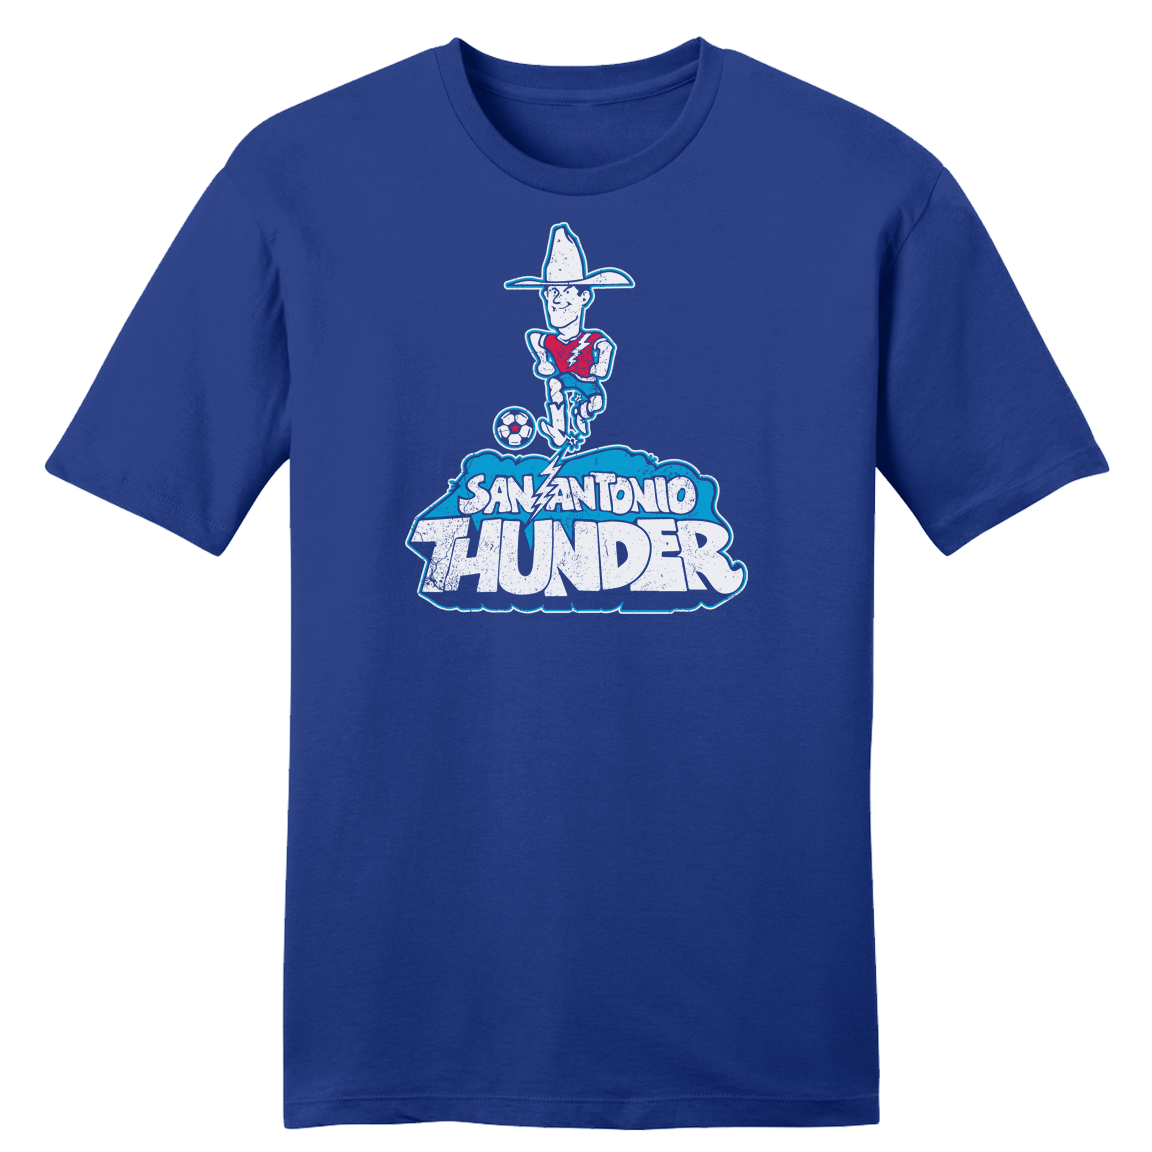 San Antonio Thunder Soccer T-shirt